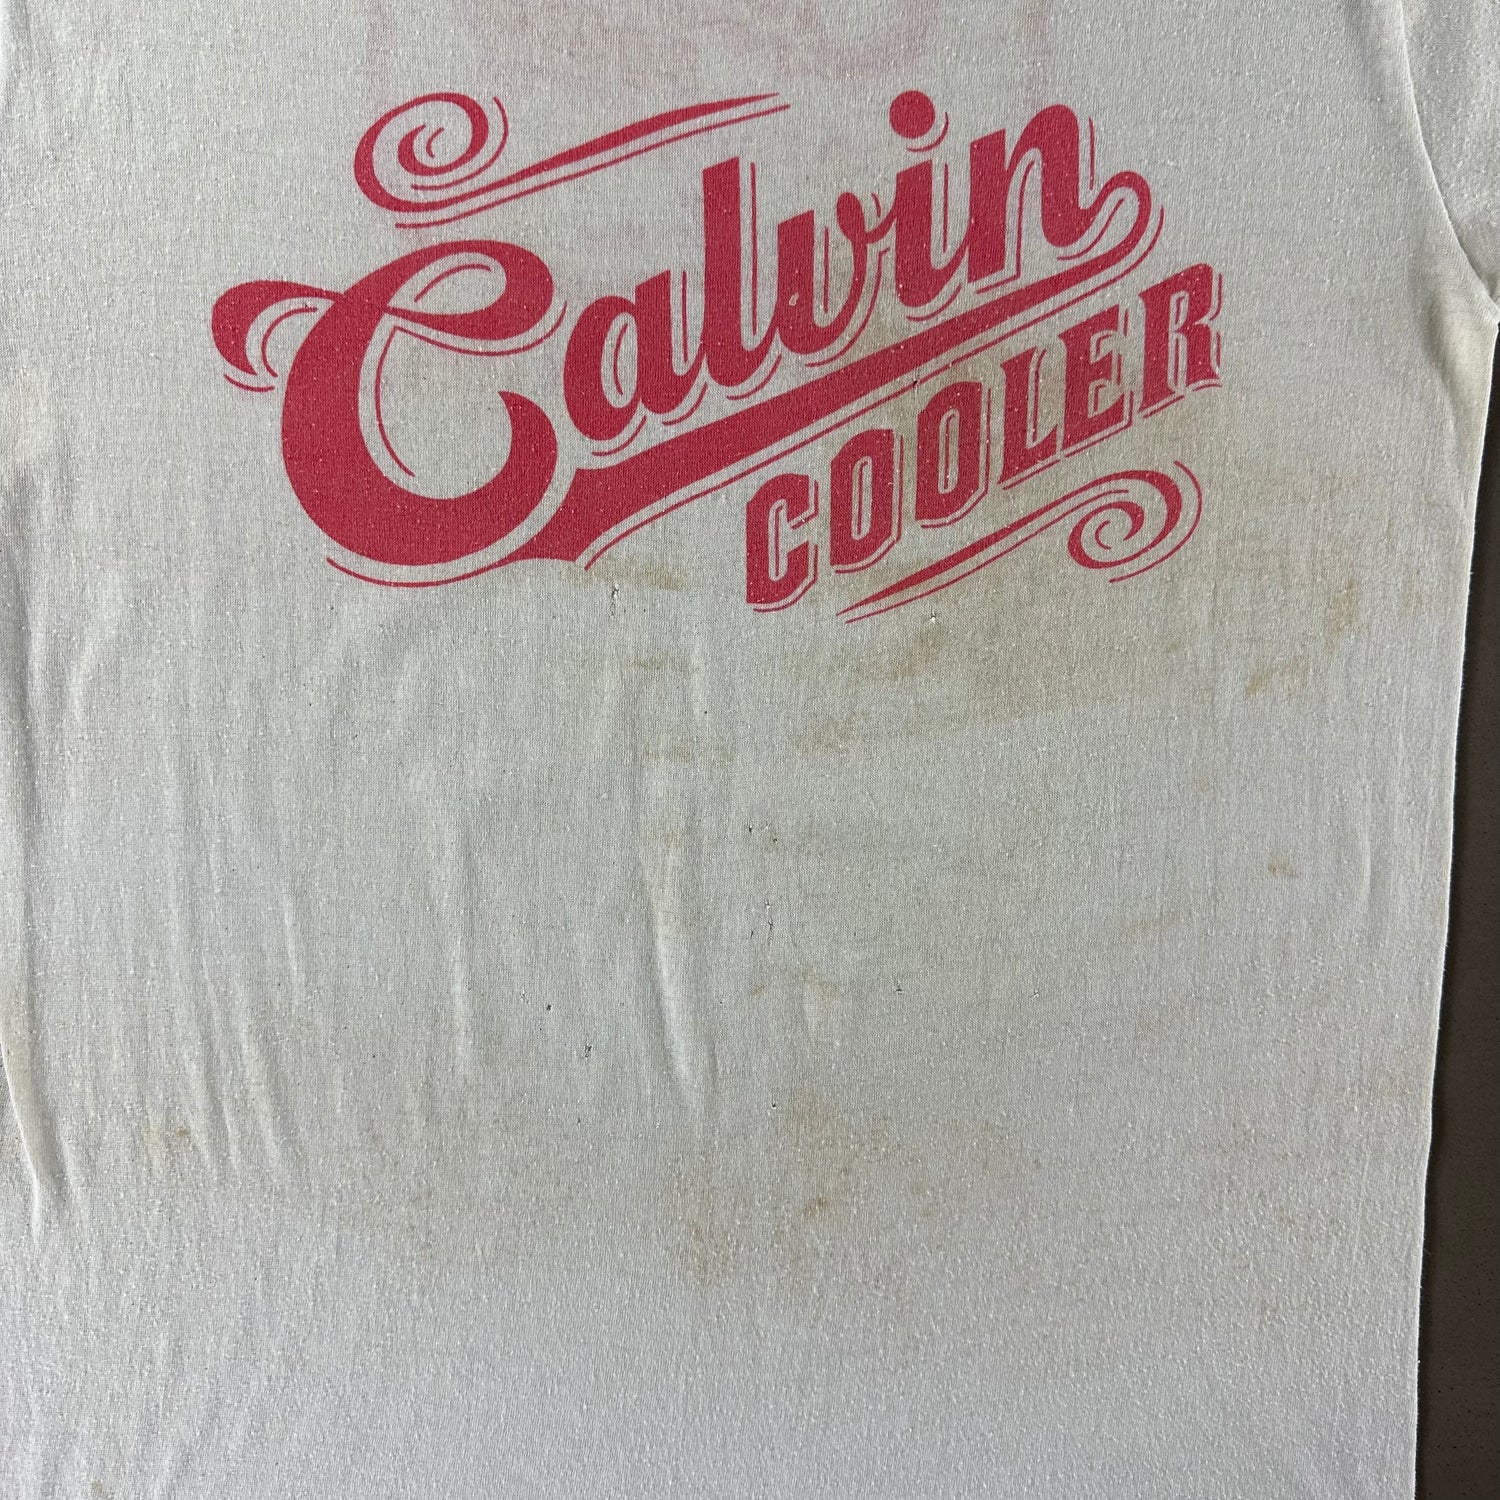 Vintage 1980s Calvin Cooler T-shirt size XL